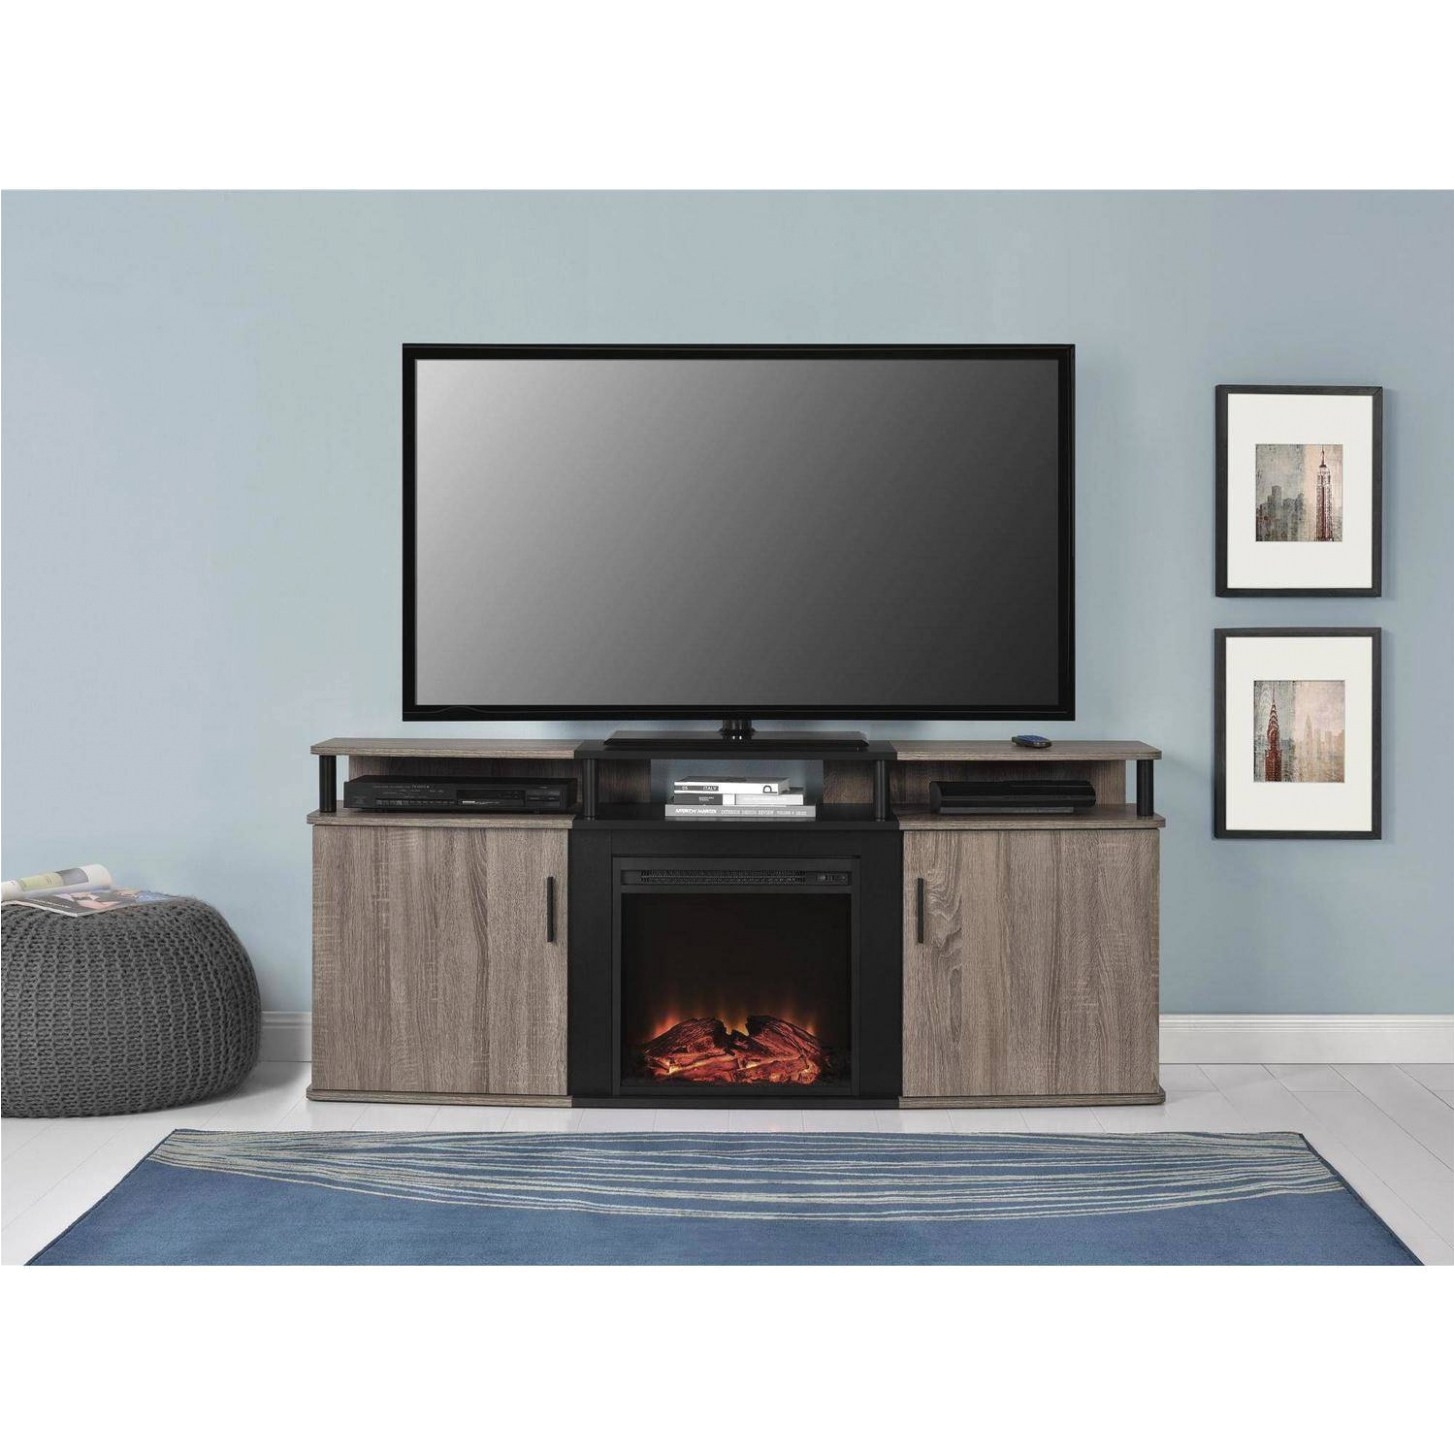 electric fireplace walmart canada new snazzy electric fireplace tv stand electric fireplace tv stand